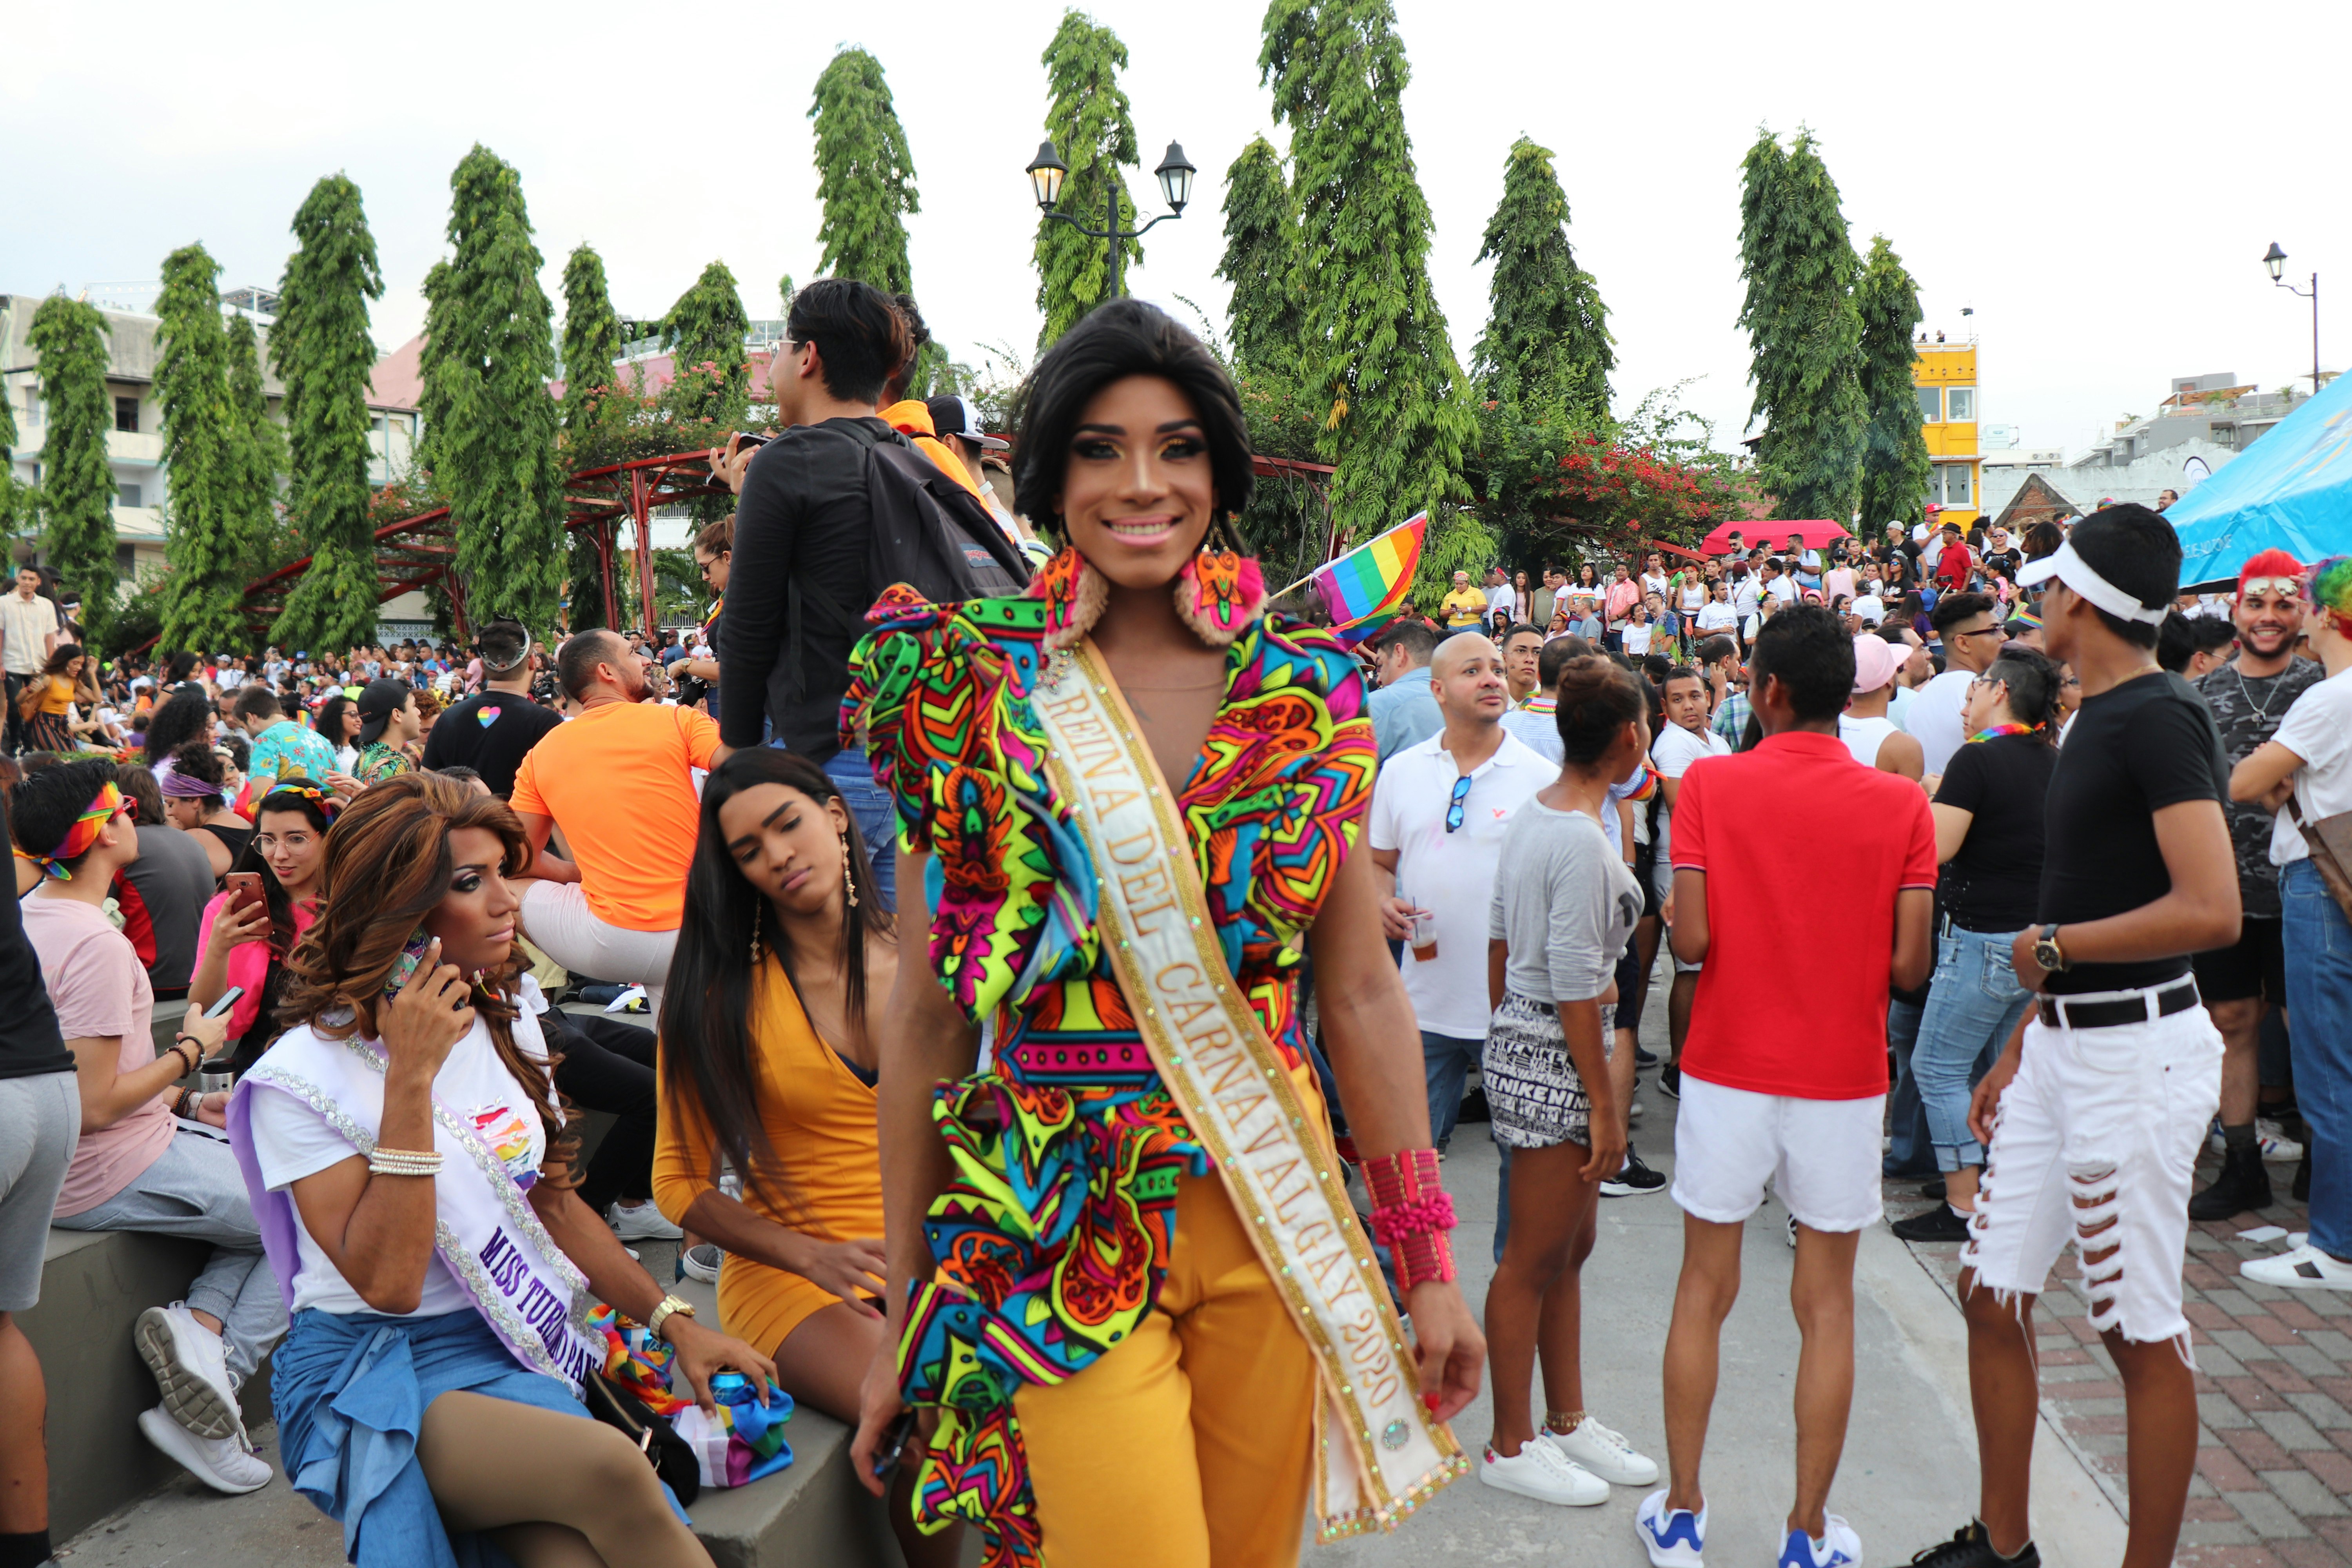 Marcha del orgullo LGBTIQ+
Casco Antiguo, Panamá
2019

Instagram: @BetzyWithZ 
